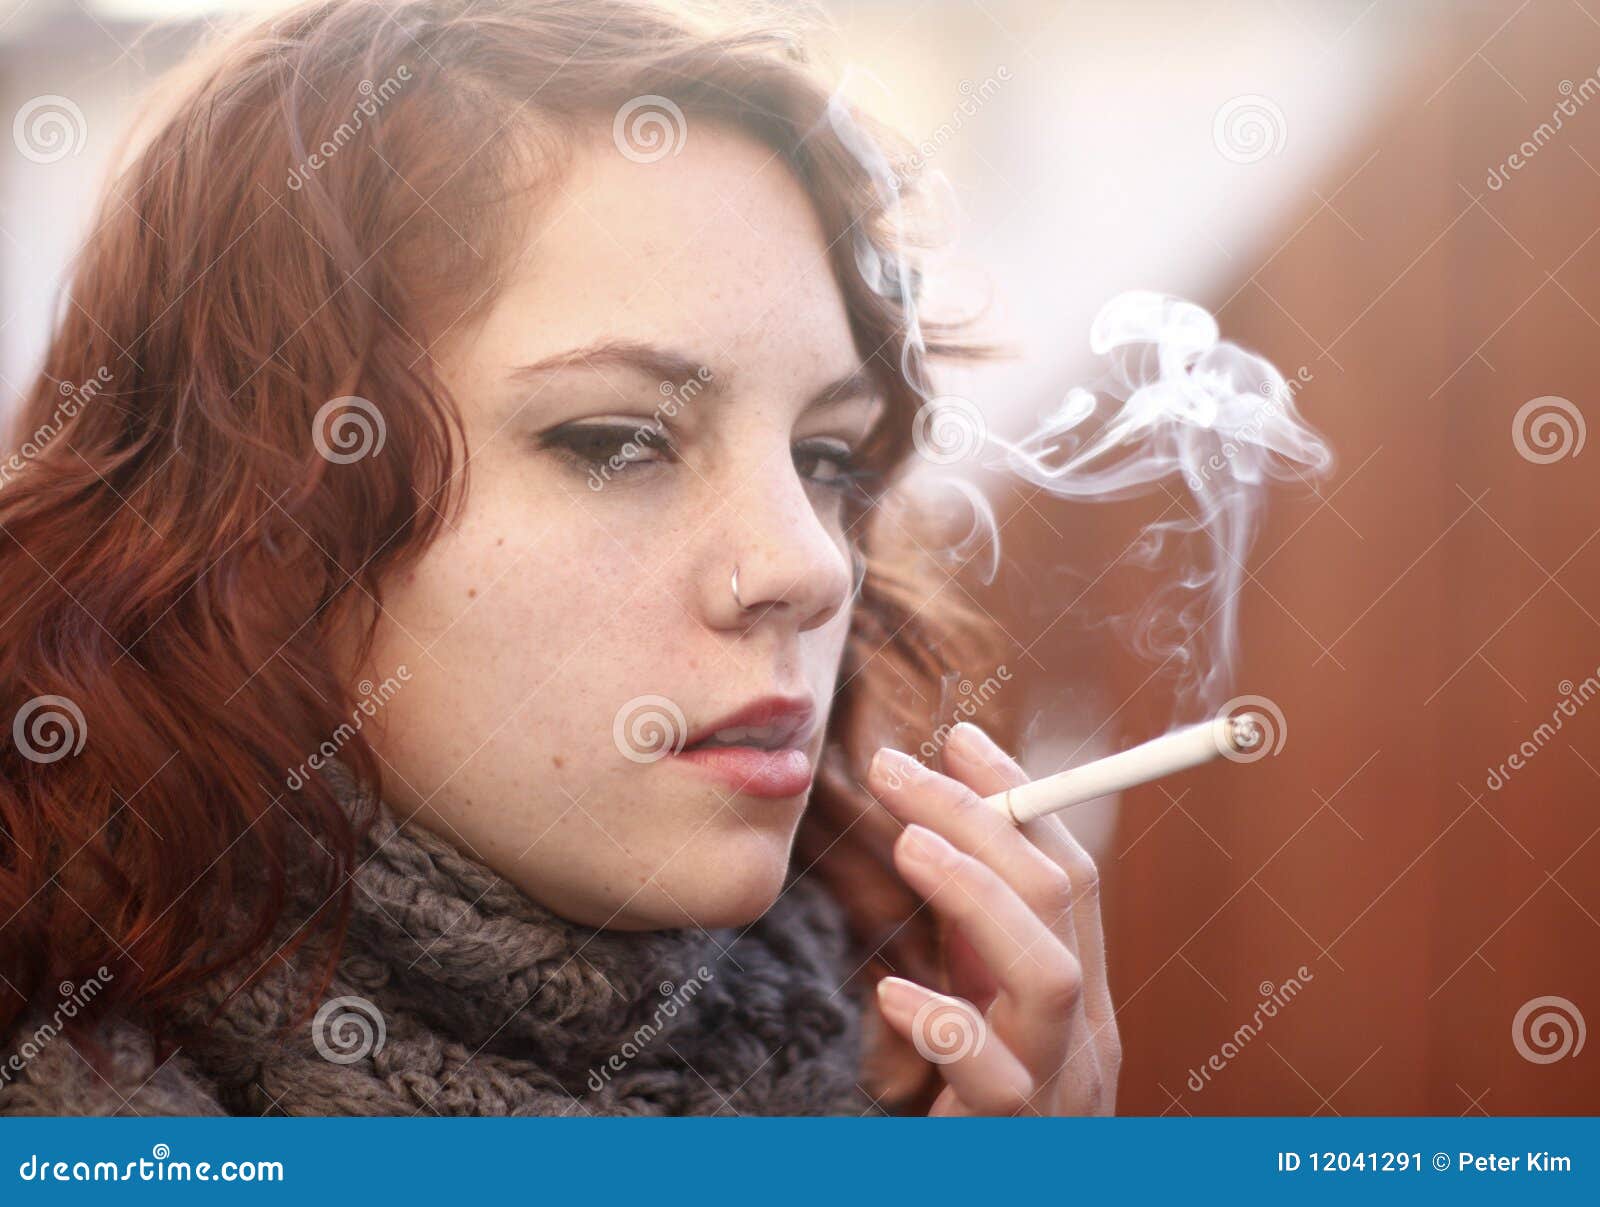 弄堂里的抽烟女人-中关村在线摄影论坛